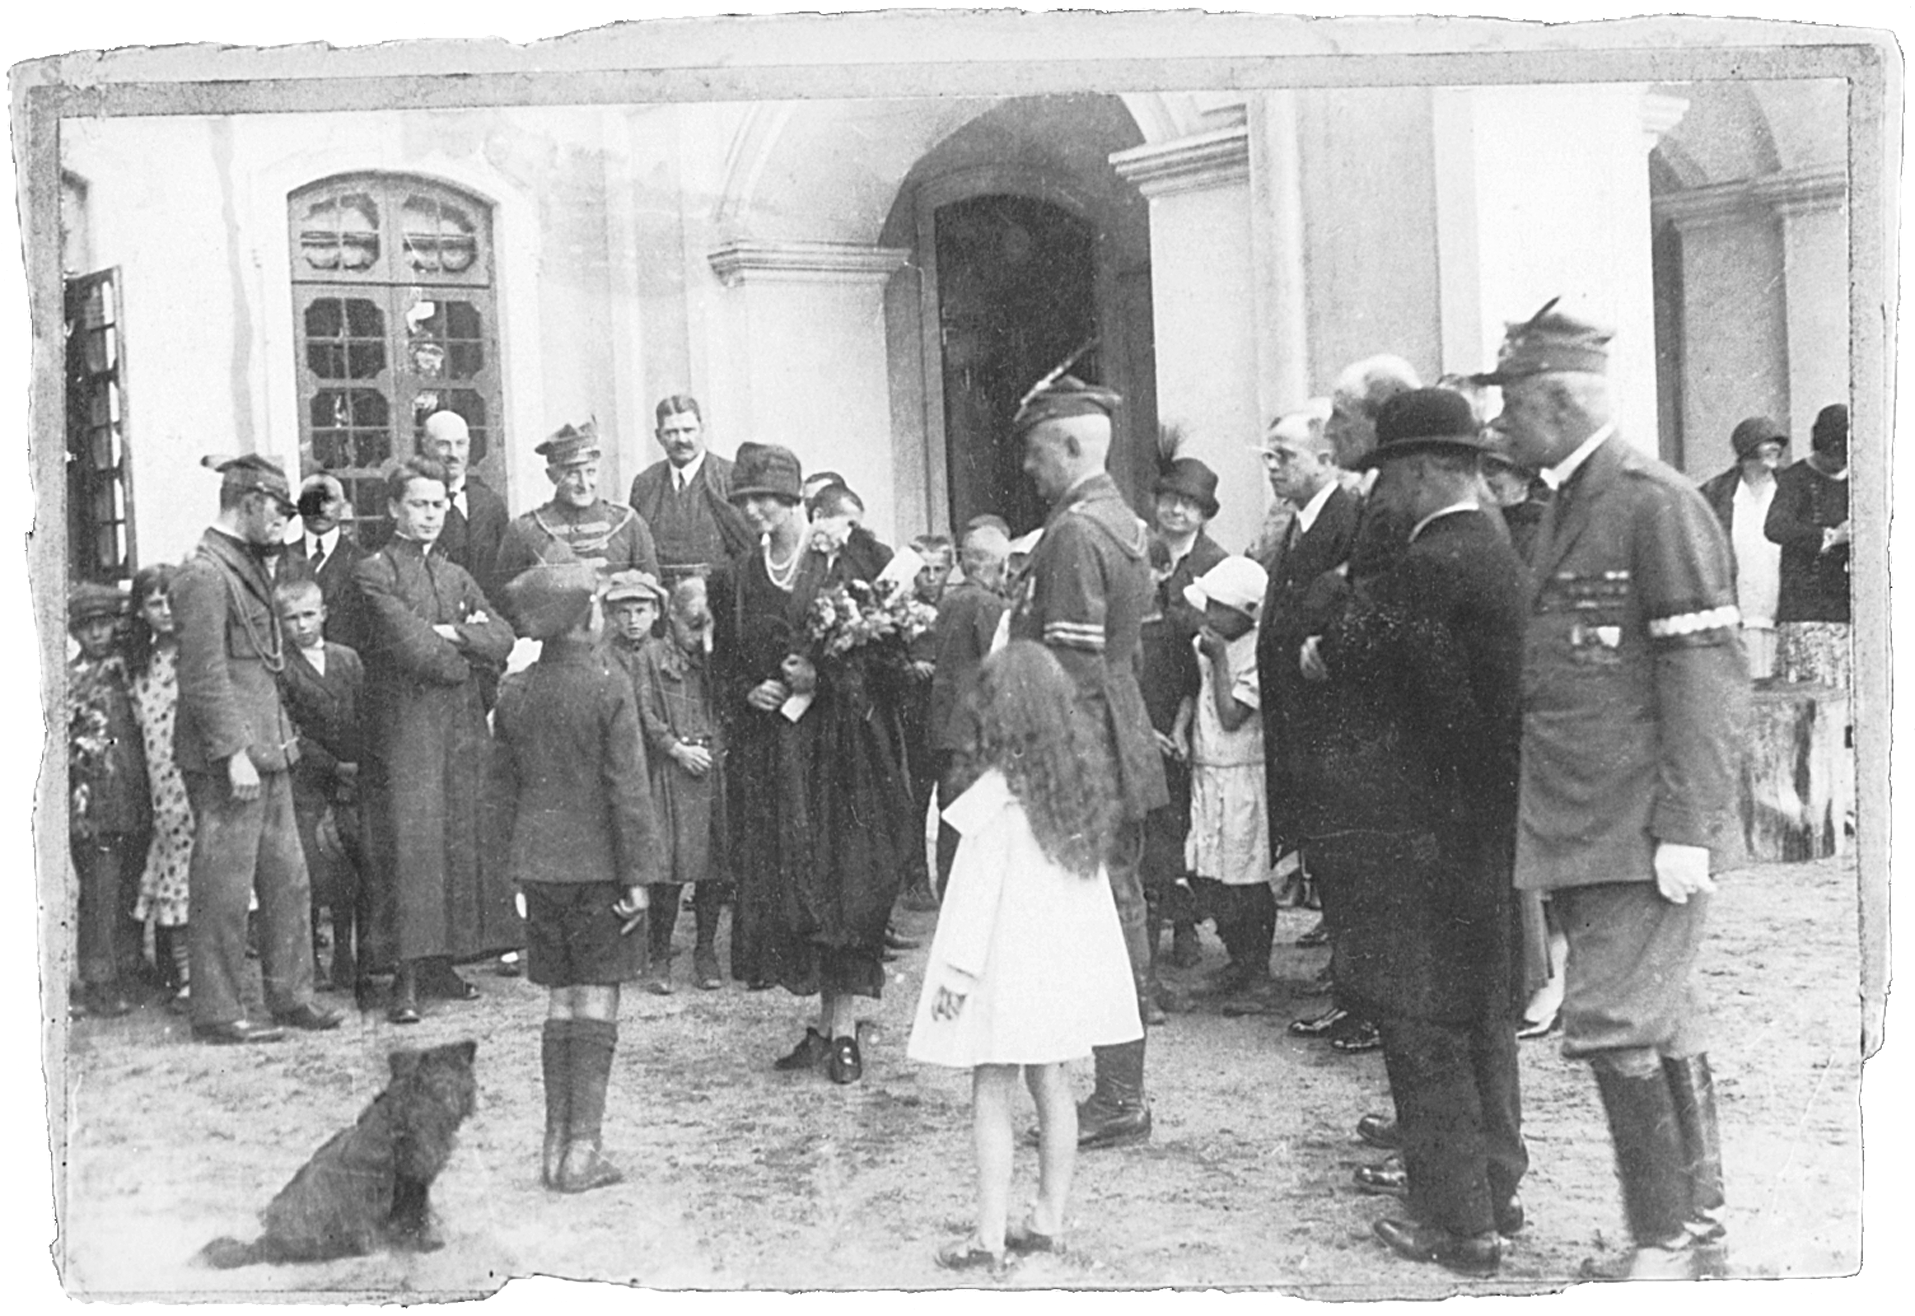 Fotografia archiwalna, czarno-biała, wykonana 2 sierpnia 1927 roku w Kozłówce, przedstawia moment wręczenia kwiatów i składania życzeń Marii Zamoyskiej z okazji imienin. Na fotografii grupa osób w różnym wieku, którzy otaczają kobietę z naręczem kwiatów i stojącego przed nią, w wyprostowanej pozie, chłopca. Niektórzy mężczyźni ubrani w mundury Towarzystwa Gimnastycznego „Sokół”.